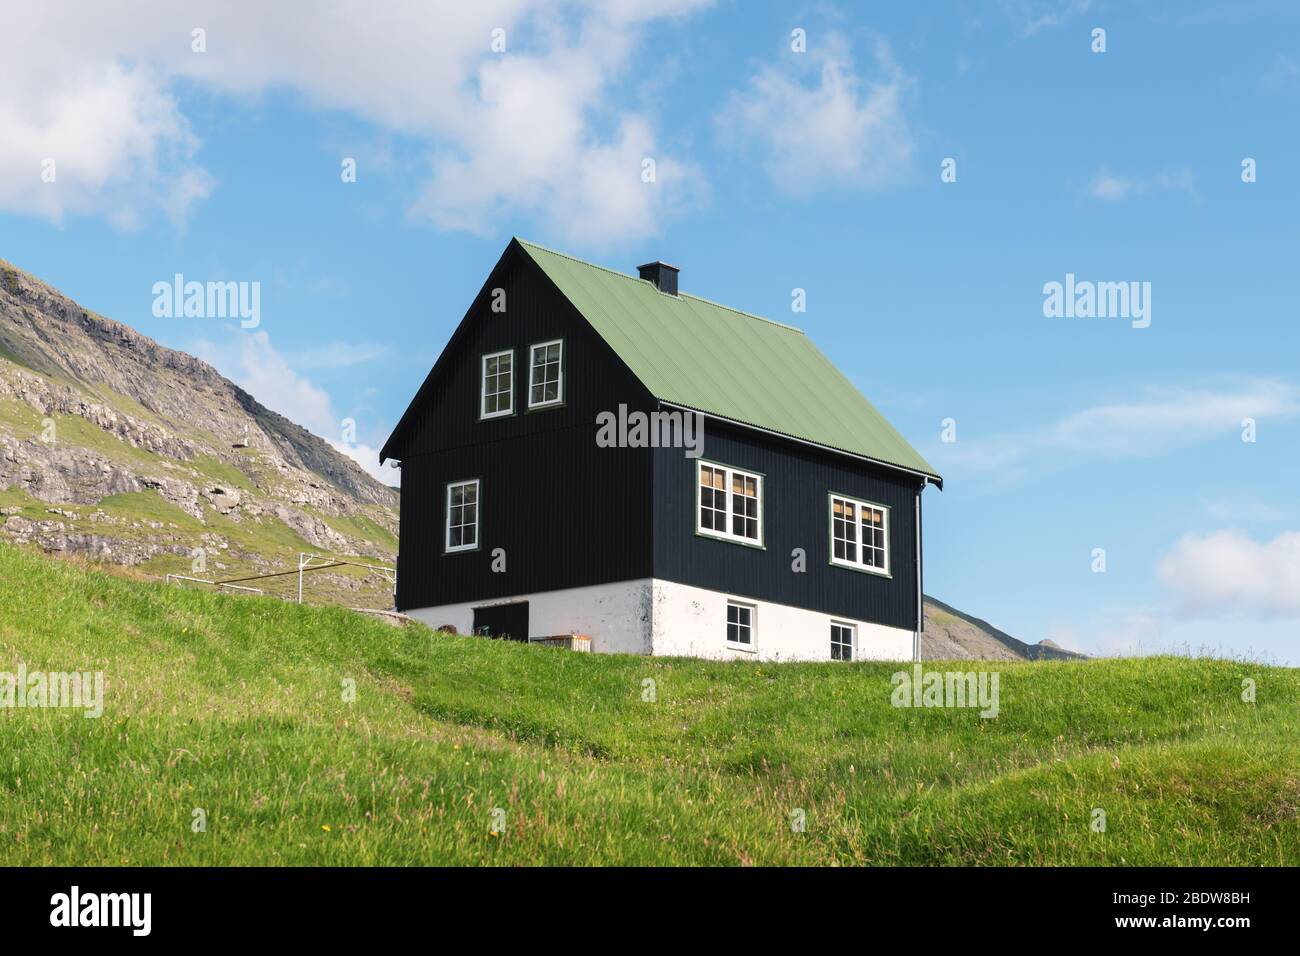 Einfaches Haus mit grünem Dach auf blauem Himmel Hintergrund Stockfoto